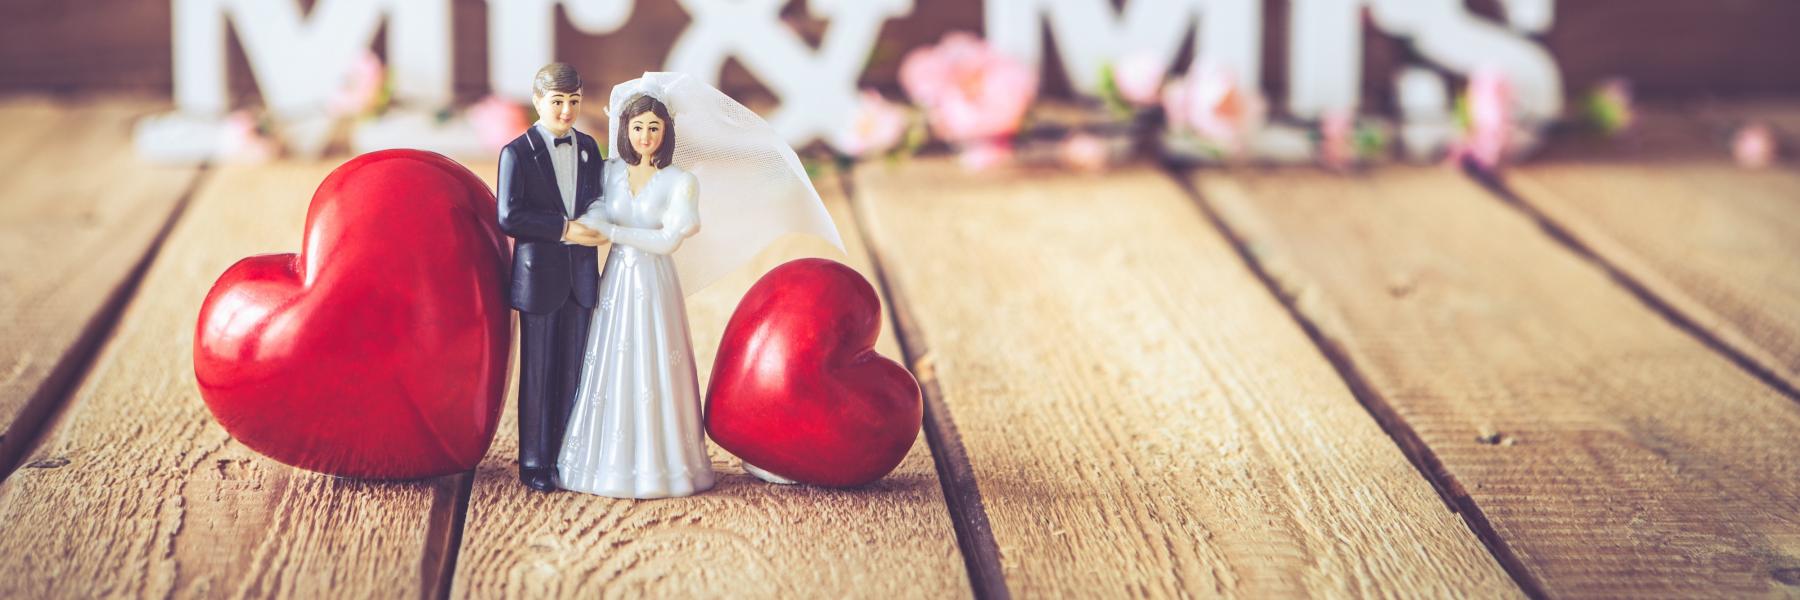 5 خرافات حول الزواج الجيد والسعيد.. لا تصدقيها